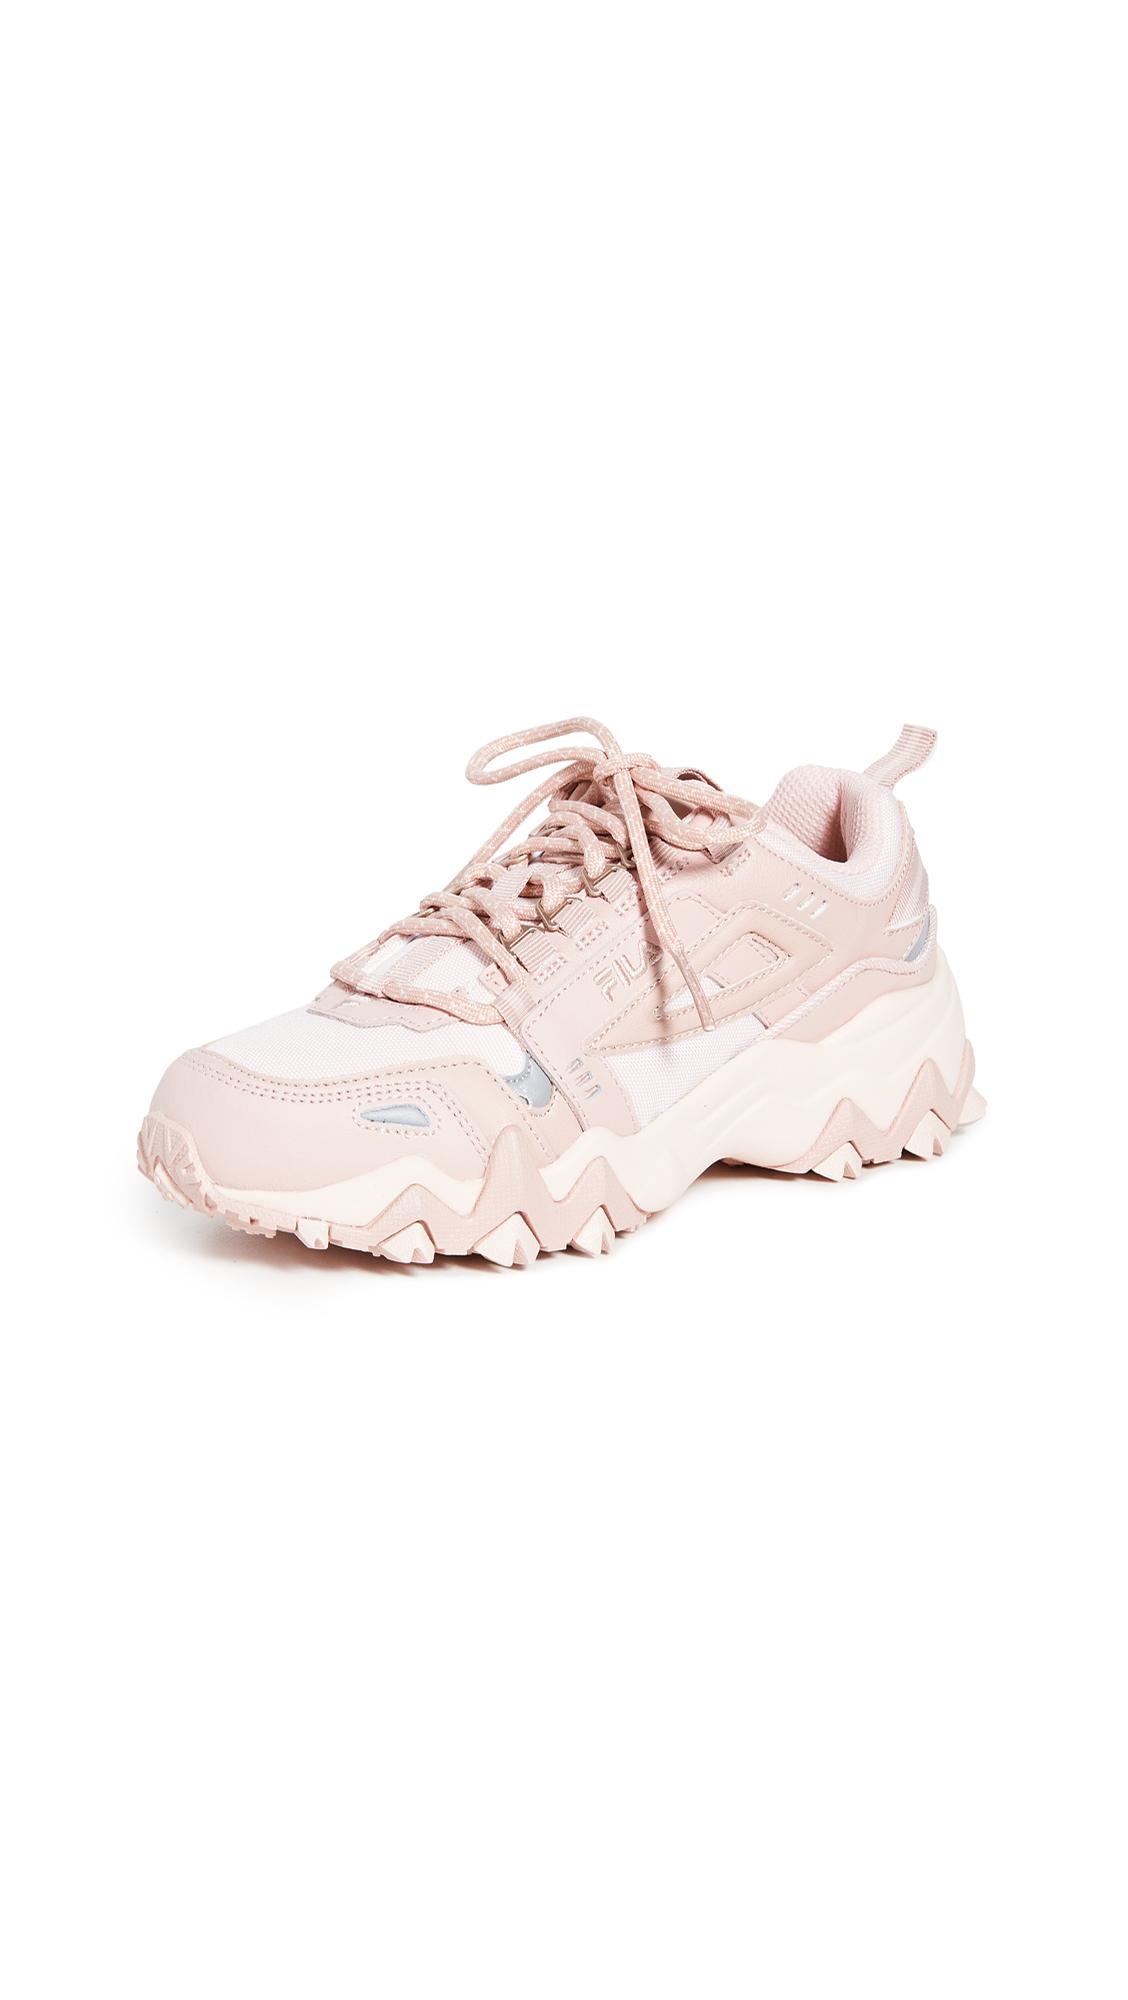 Fila Leather Oakmont Tr Sneakers in Pink - Lyst